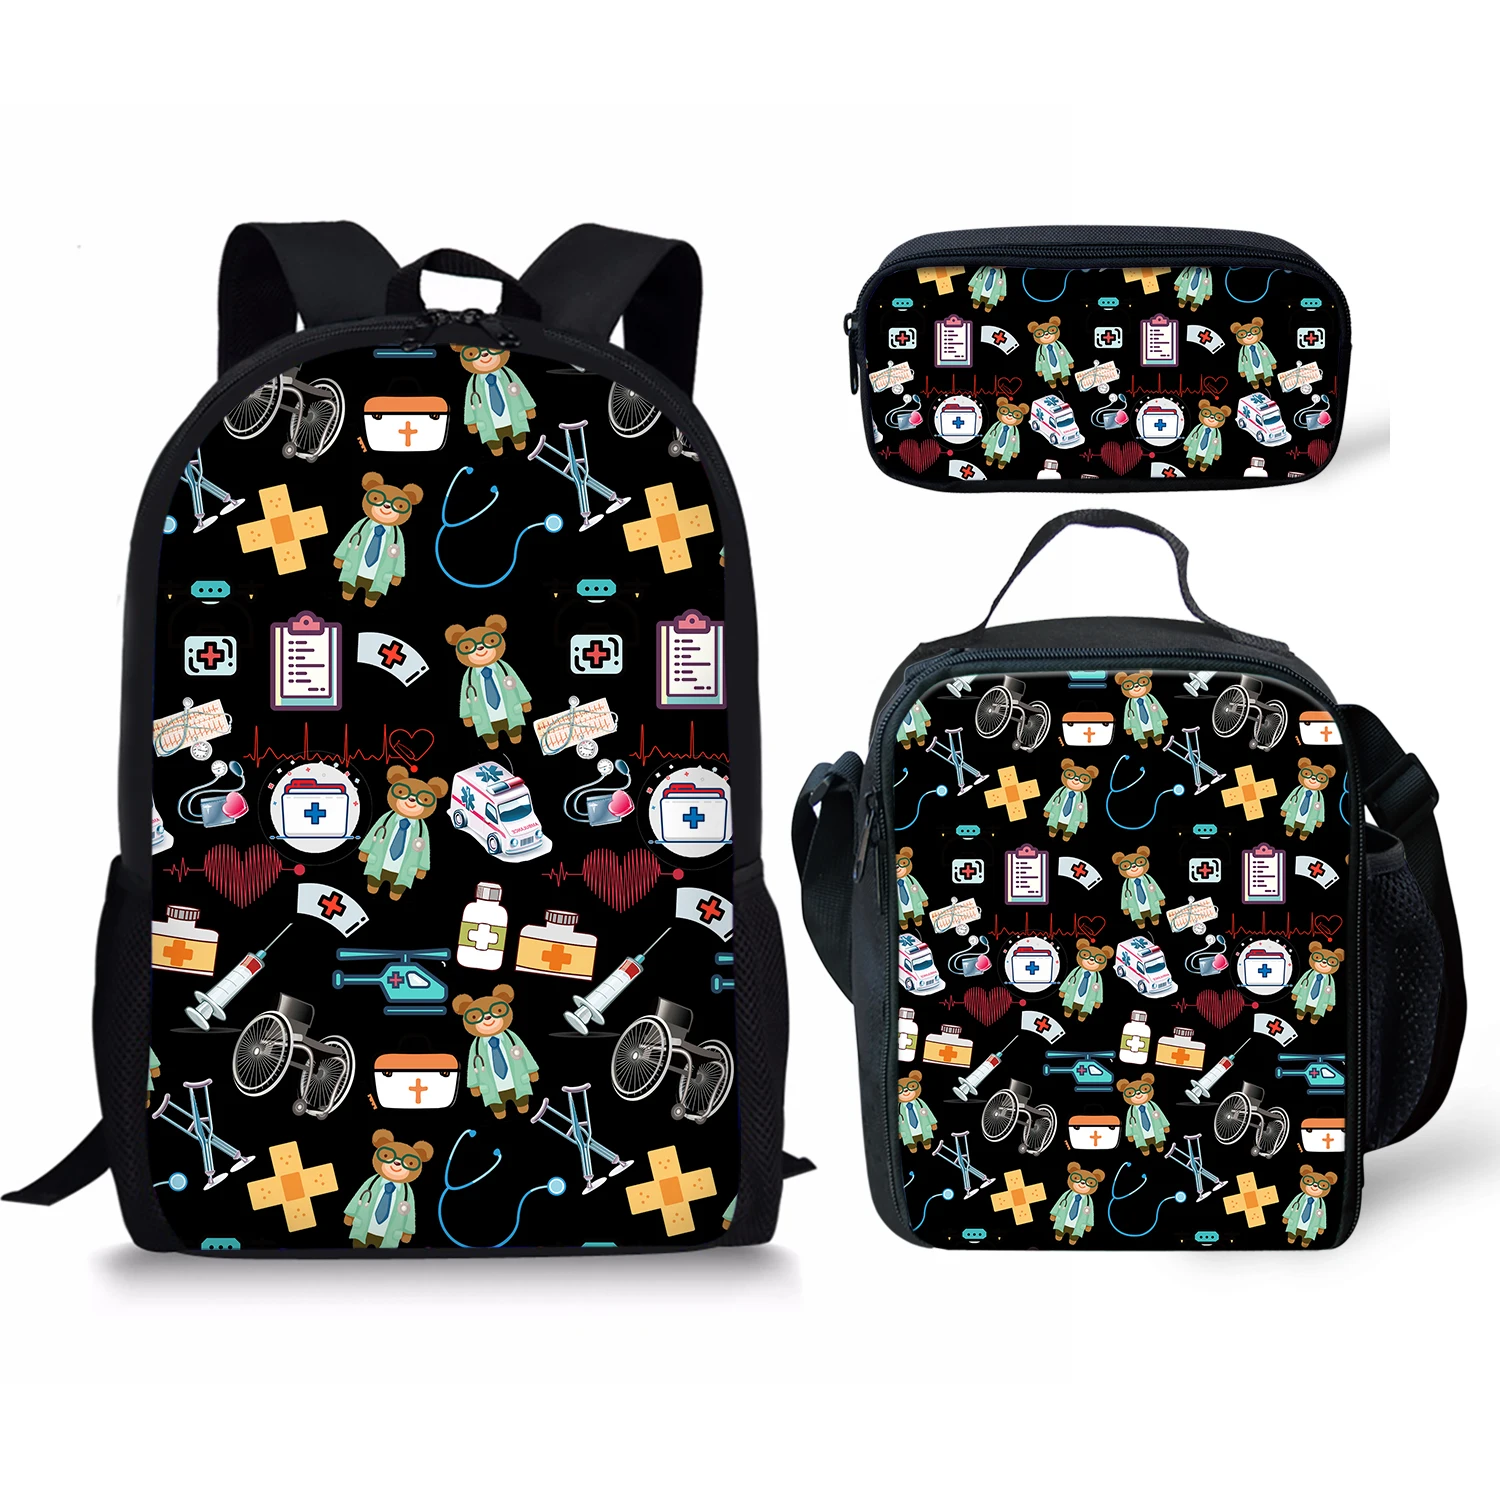 "Школьные рюкзаки с принтом медсестры тема, сумка для карандашей и сумка для ланча, персонализированный Детский рюкзак, новый дизайн, рюкзак ..."